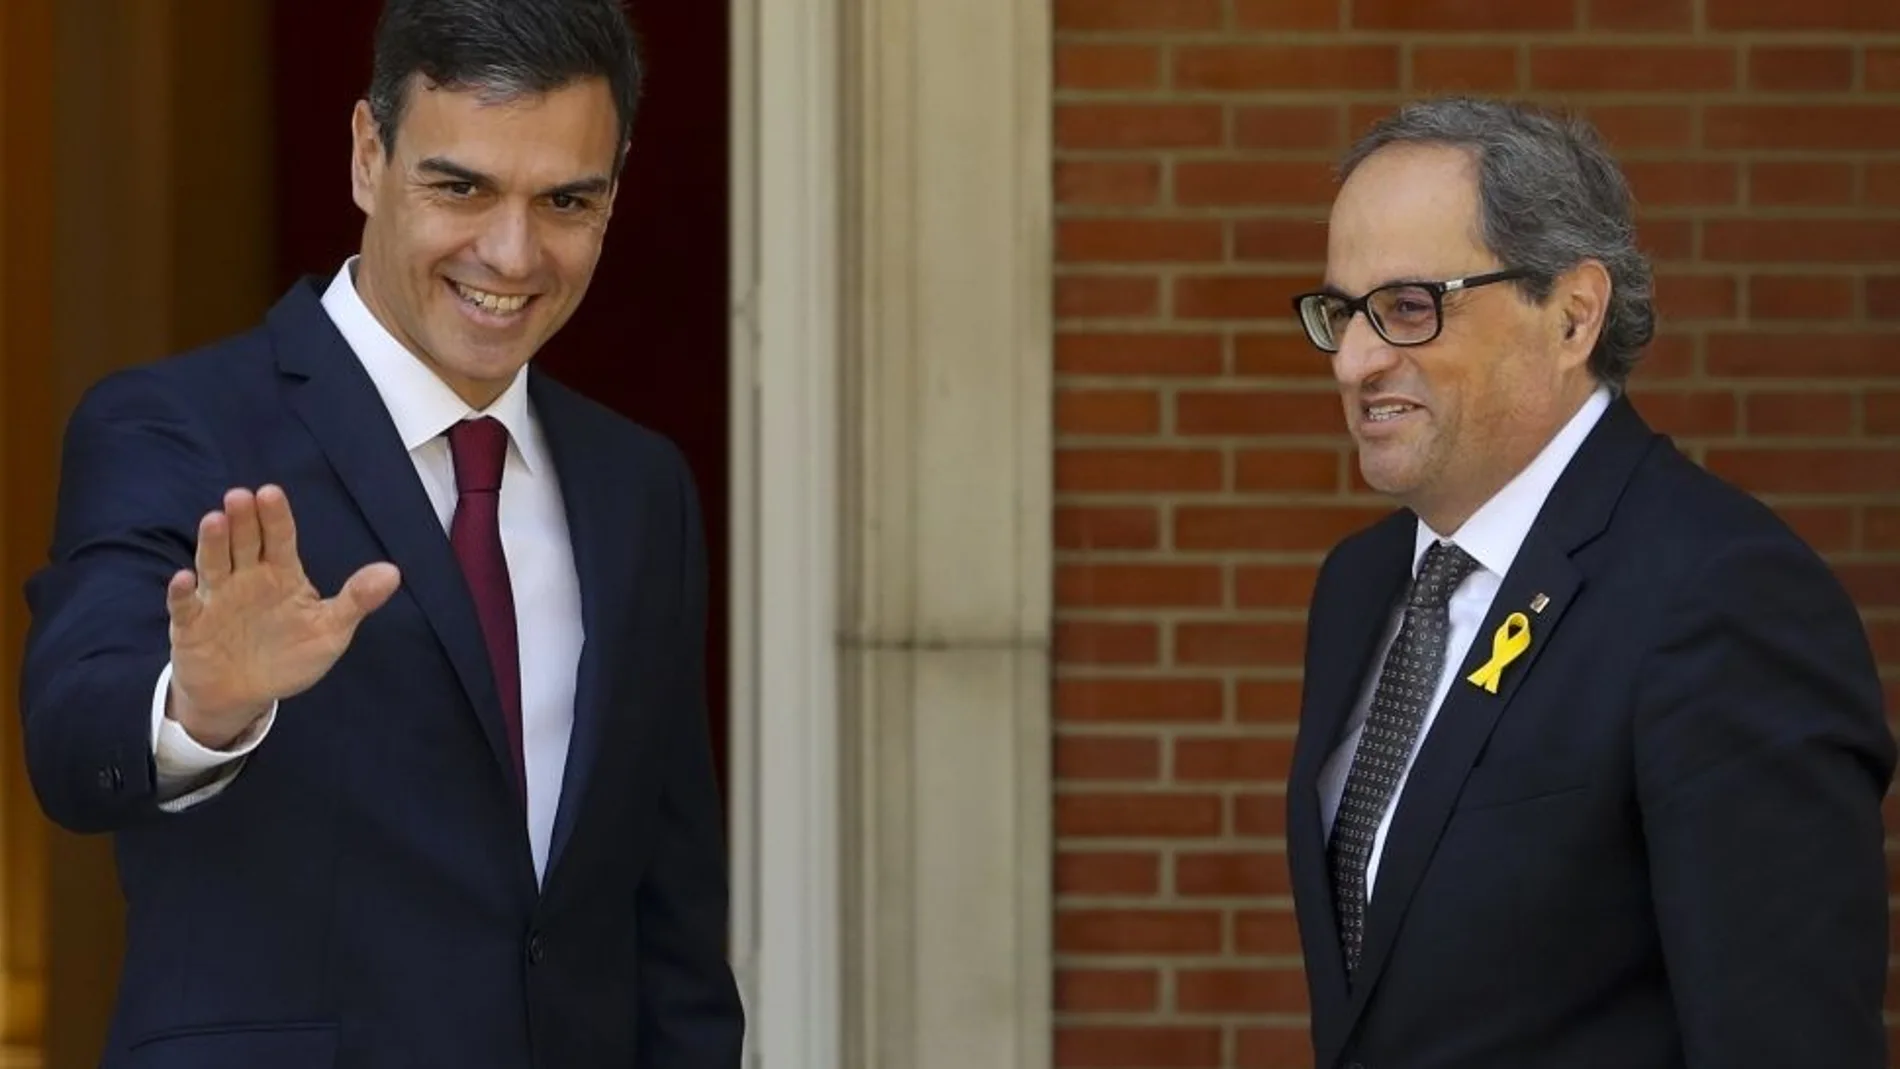 El presidente del Gobierno, Pedro Sánchez, y el presidente de la Generalitat, Quim Torra, en una imagen de archivo / Efe